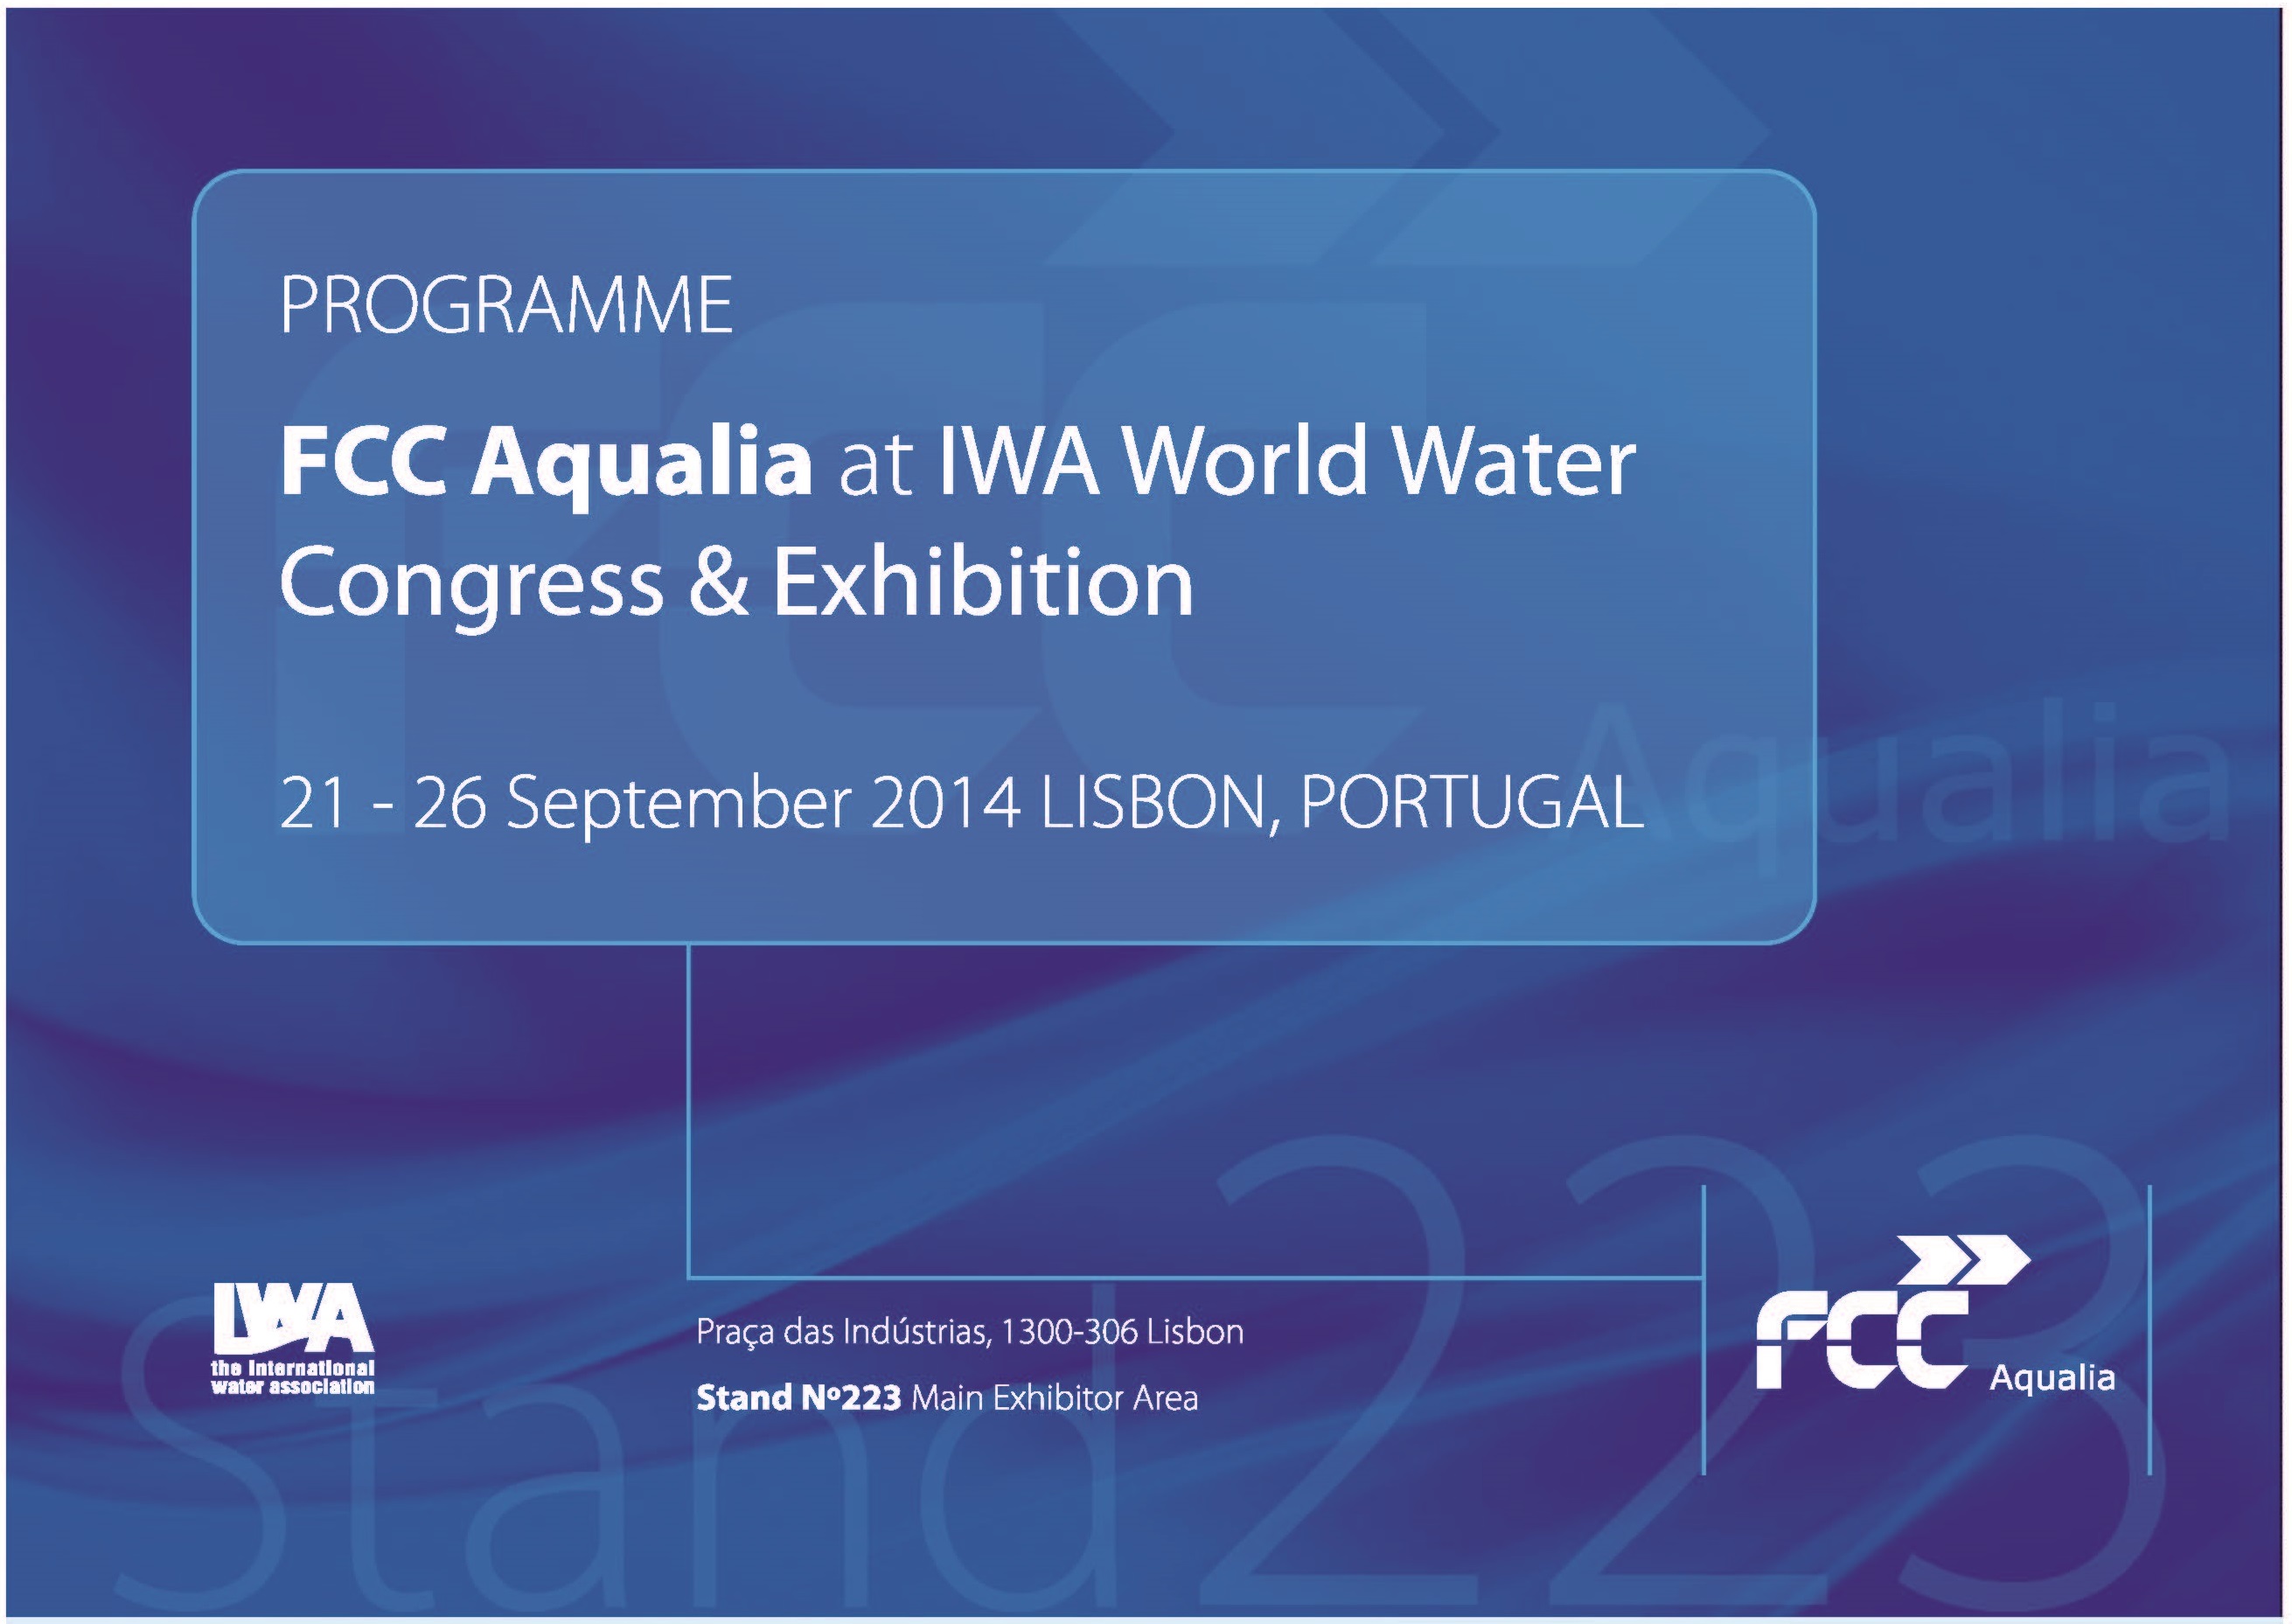 Os desenvolvimentos tecnológicos da FCC Aqualia, protagonistas no Congresso IWA 2014